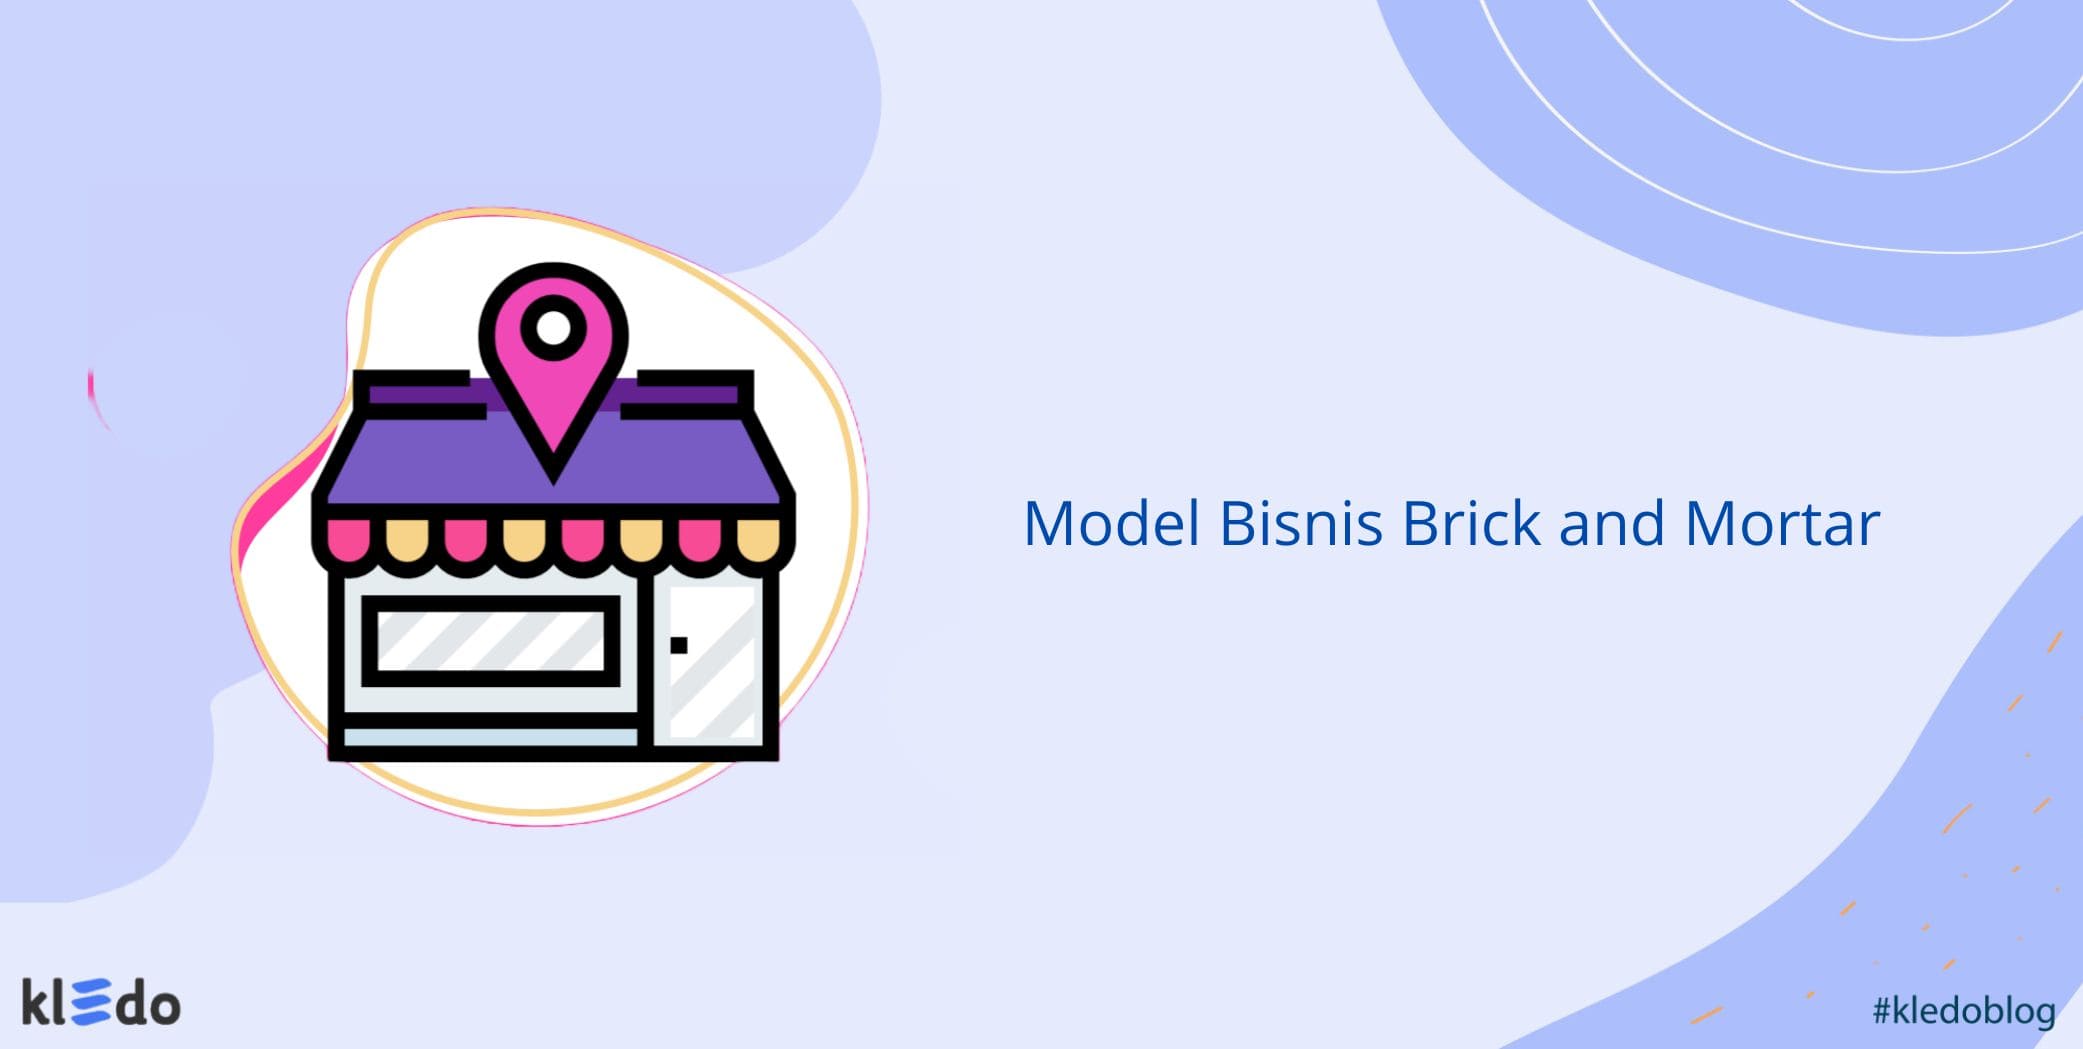 Model bisnis Brick and Mortar